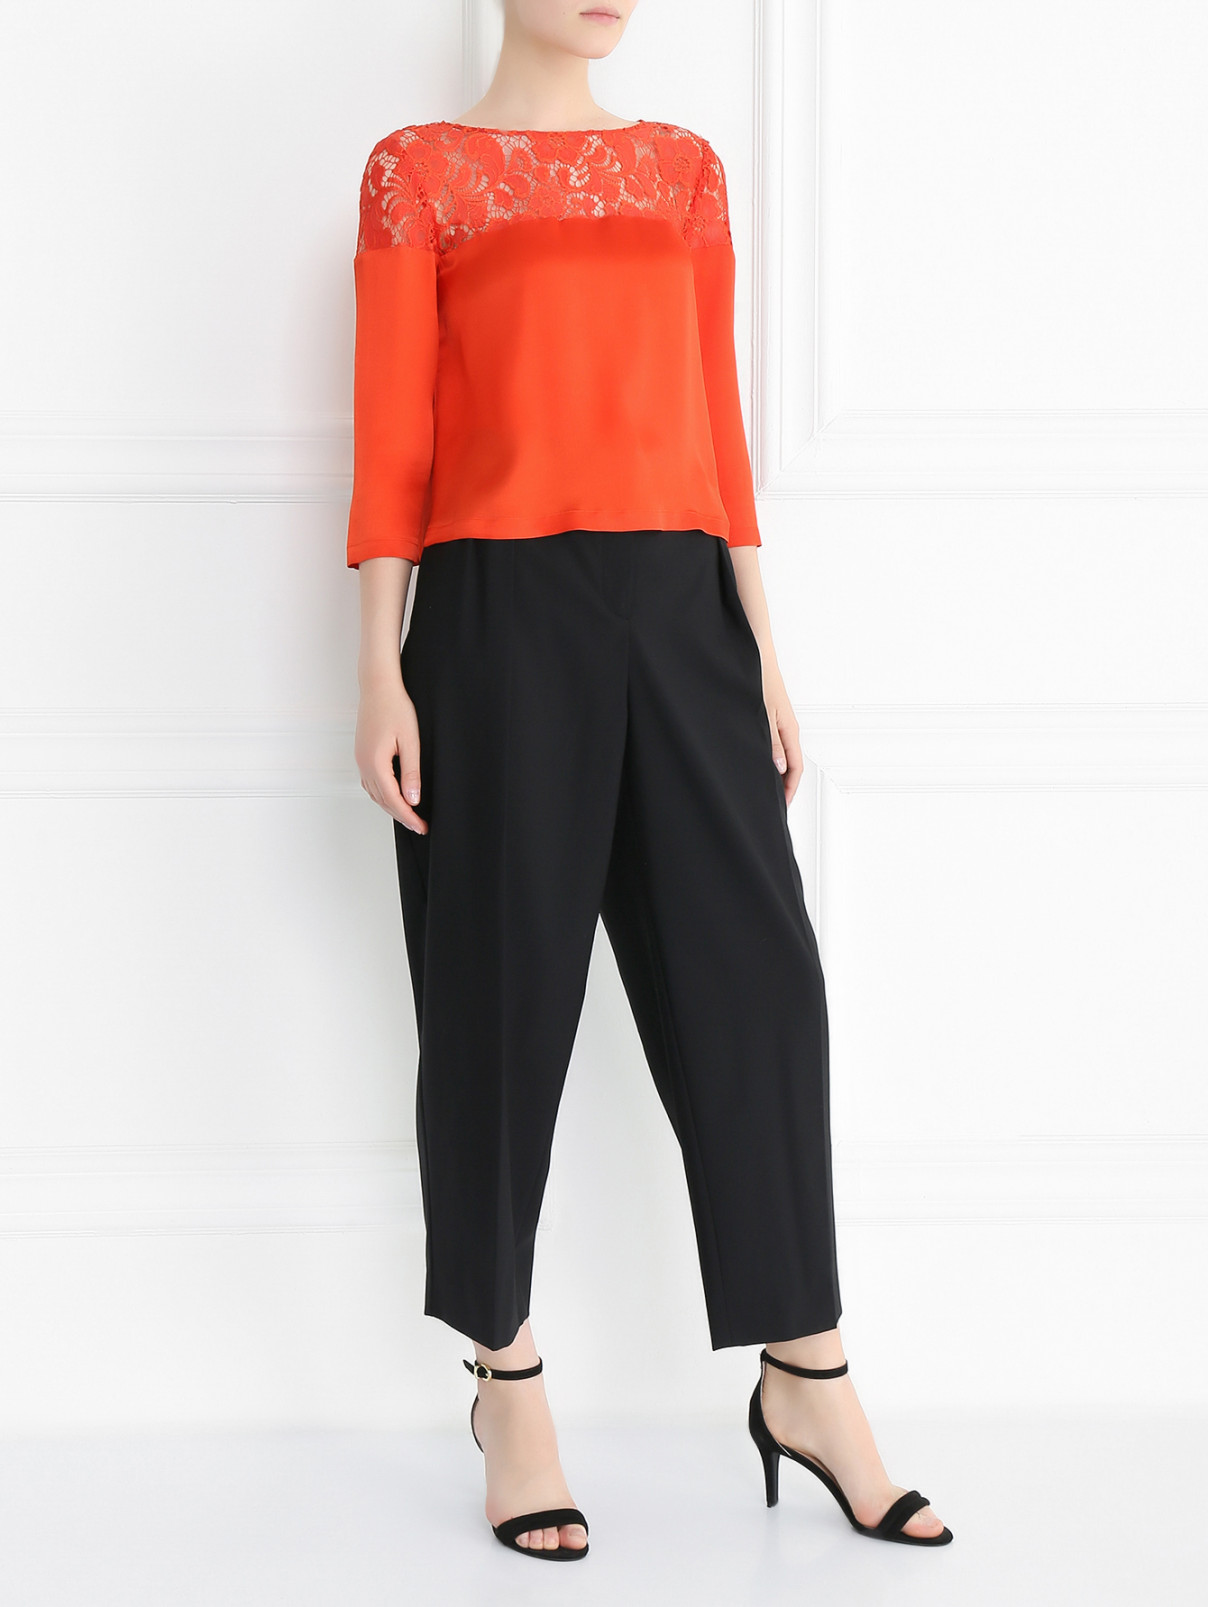 Блуза укороченная с кружевной вставкой Moschino Cheap&Chic  –  Модель Общий вид  – Цвет:  Оранжевый